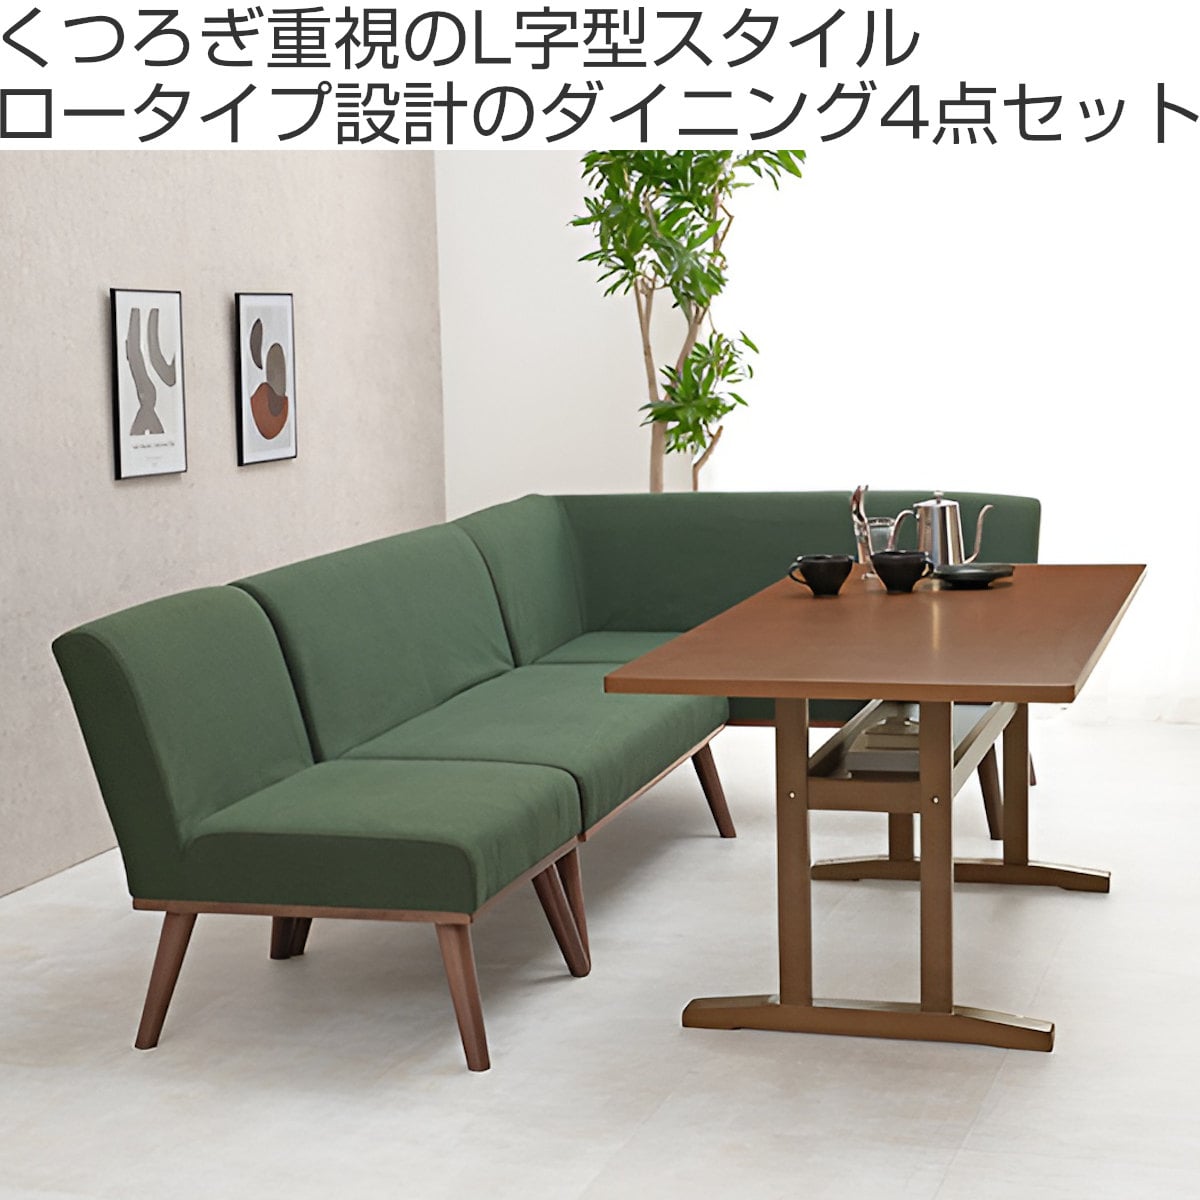 ダイニングテーブル*コーナーソファータイプ - 埼玉県の家具